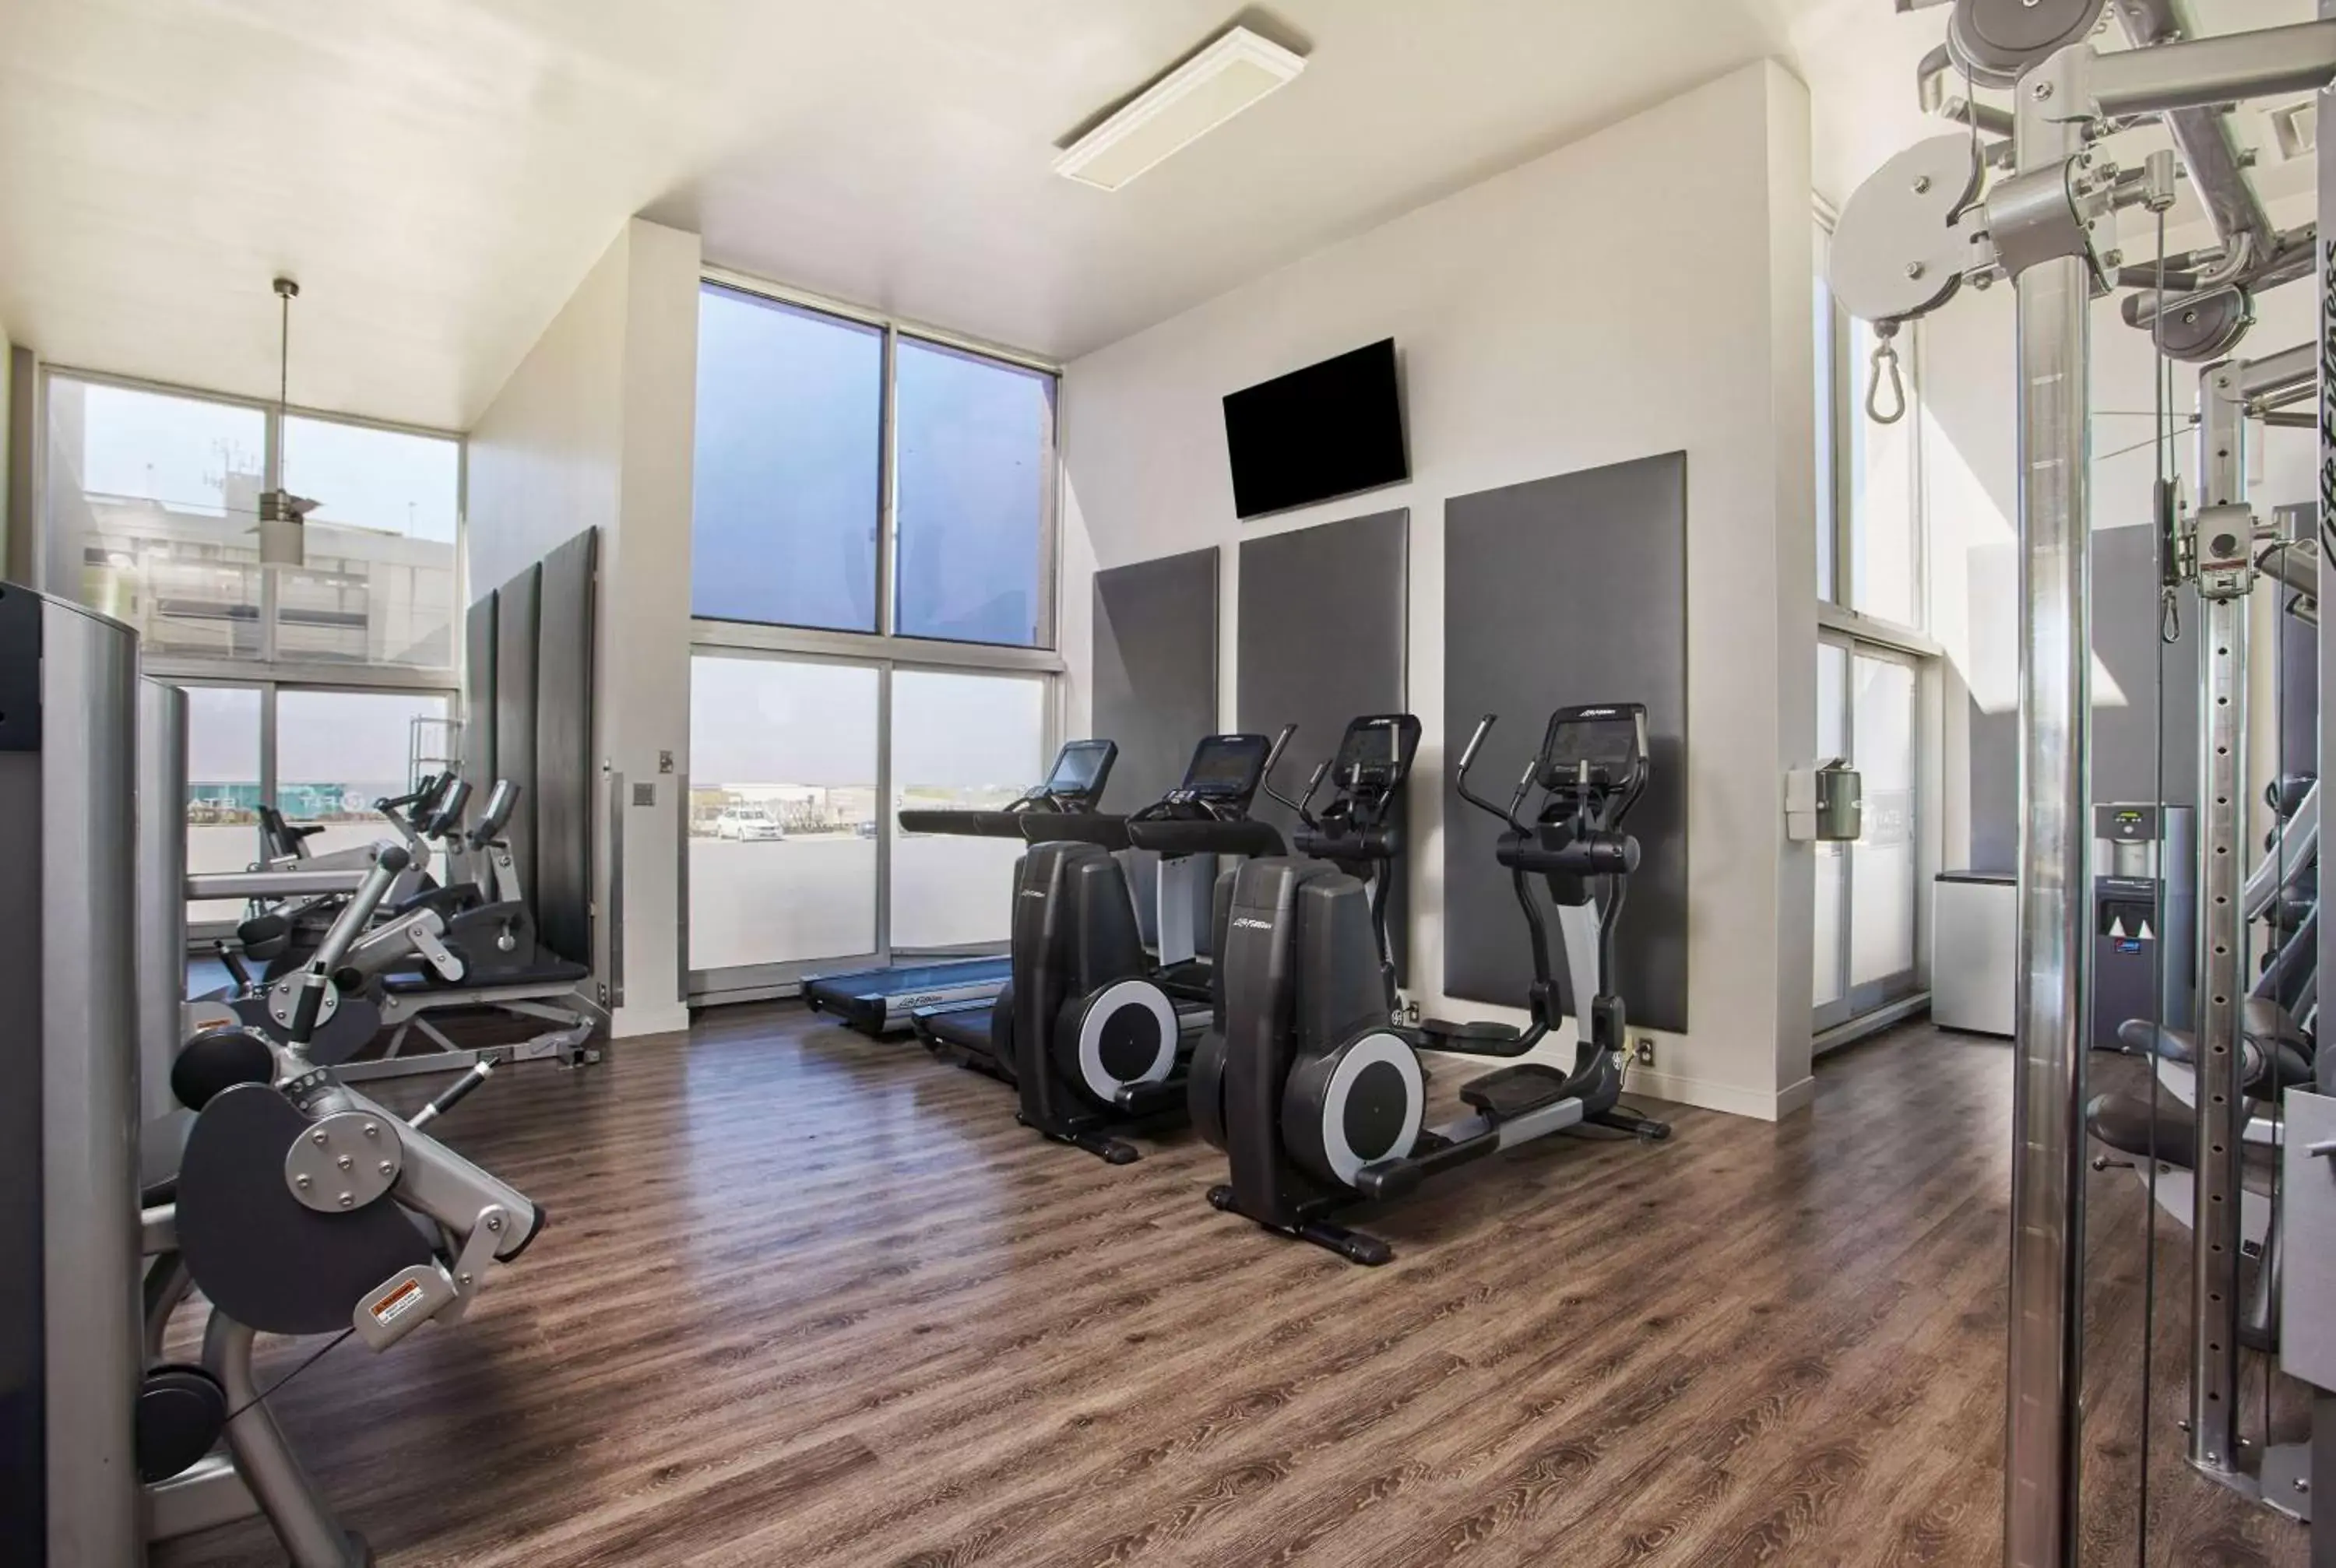 Fitness centre/facilities, Fitness Center/Facilities in Hyatt Regency Lexington